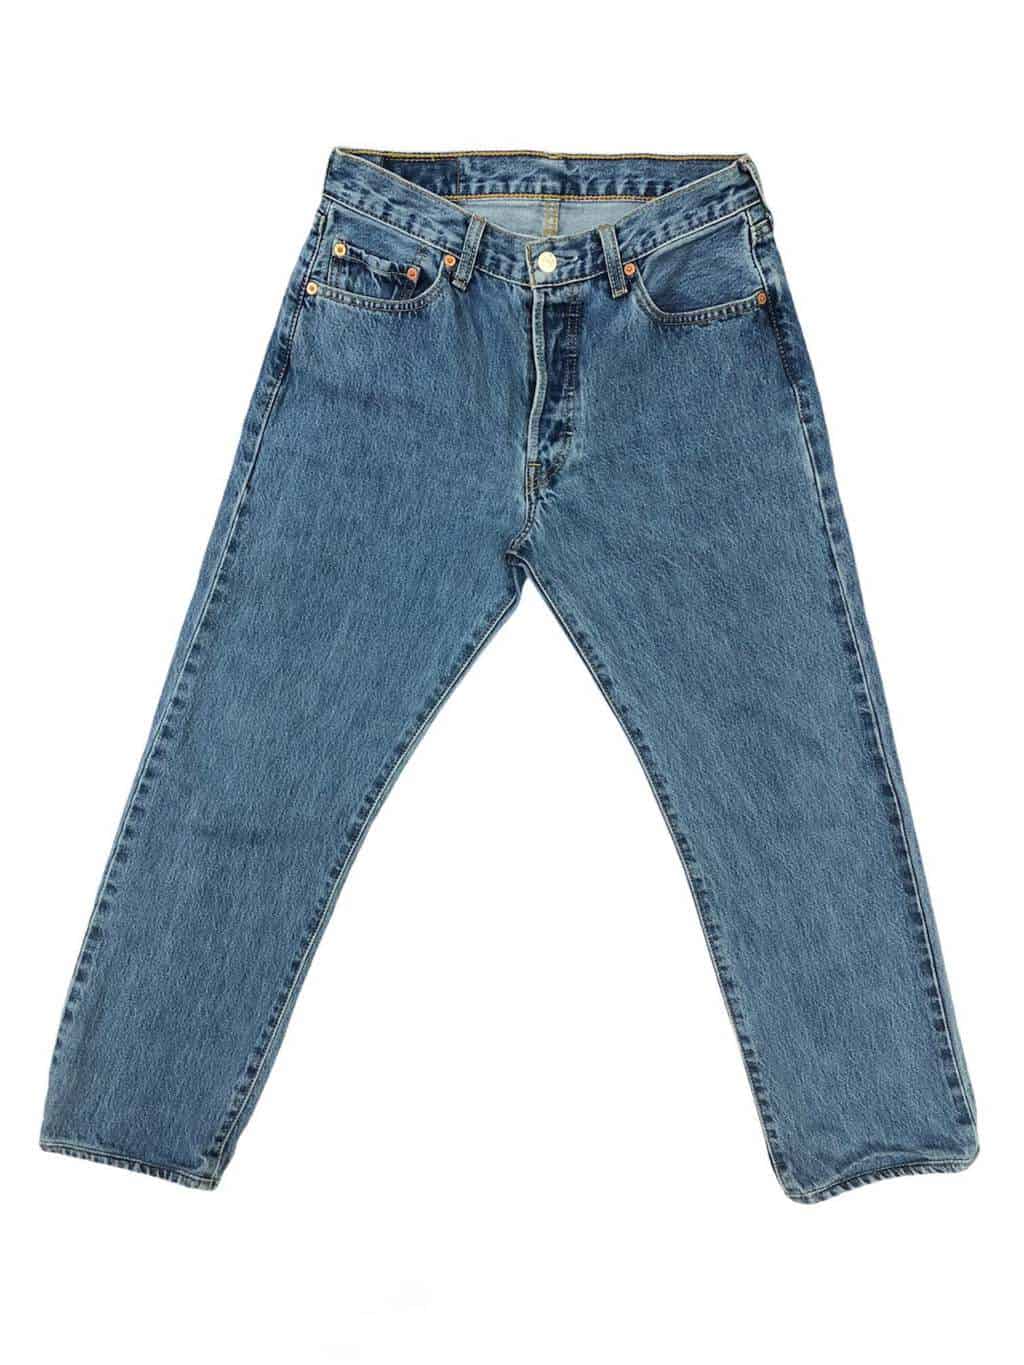 90s Vintage Levis 501 straight leg blue Jeans - W30 x L27 - St Cyr Vintage